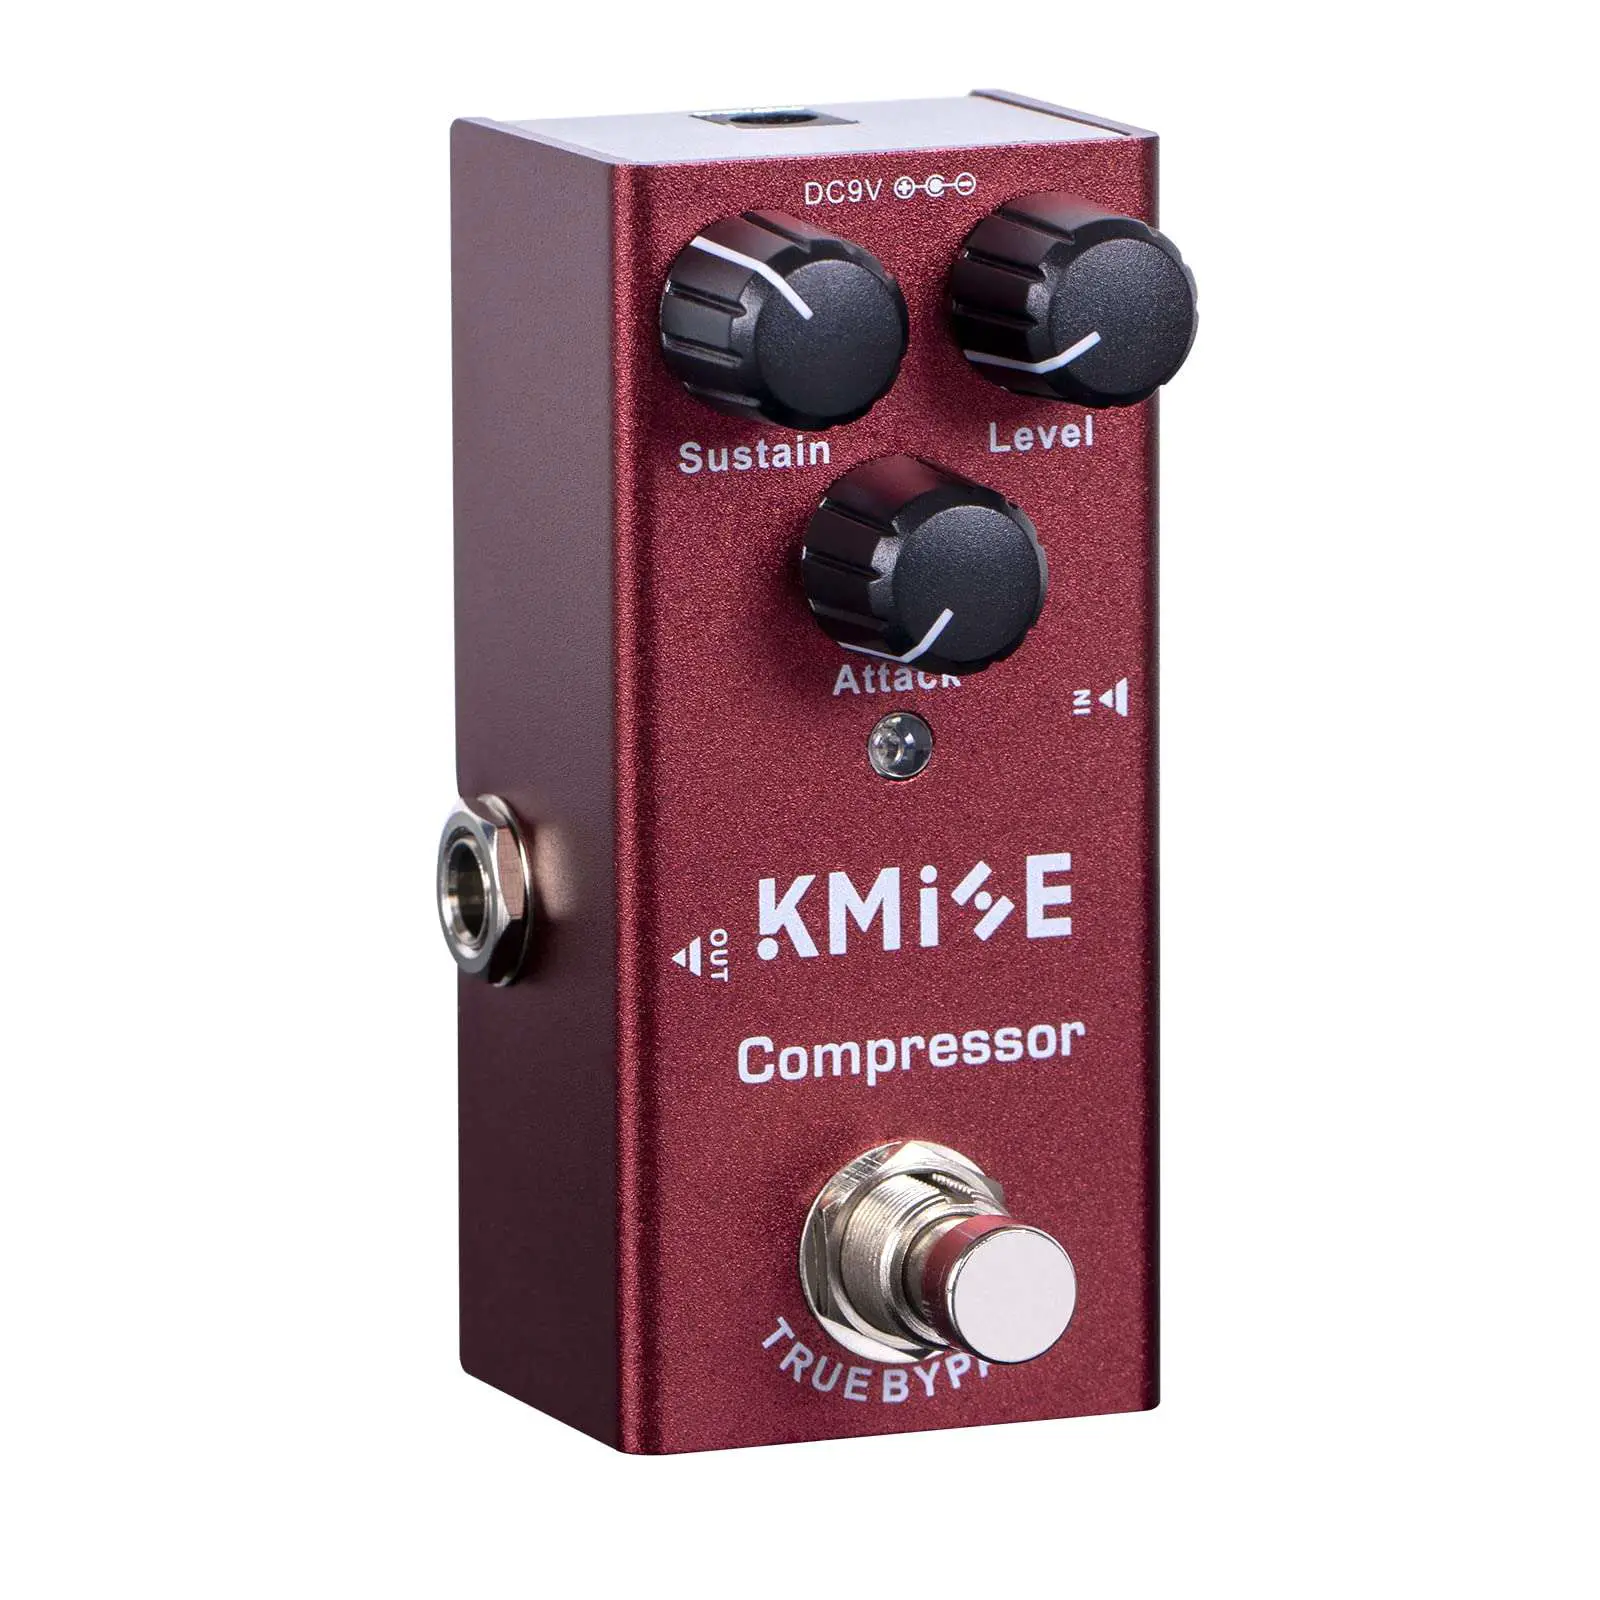 Kmise Compressor Pedal